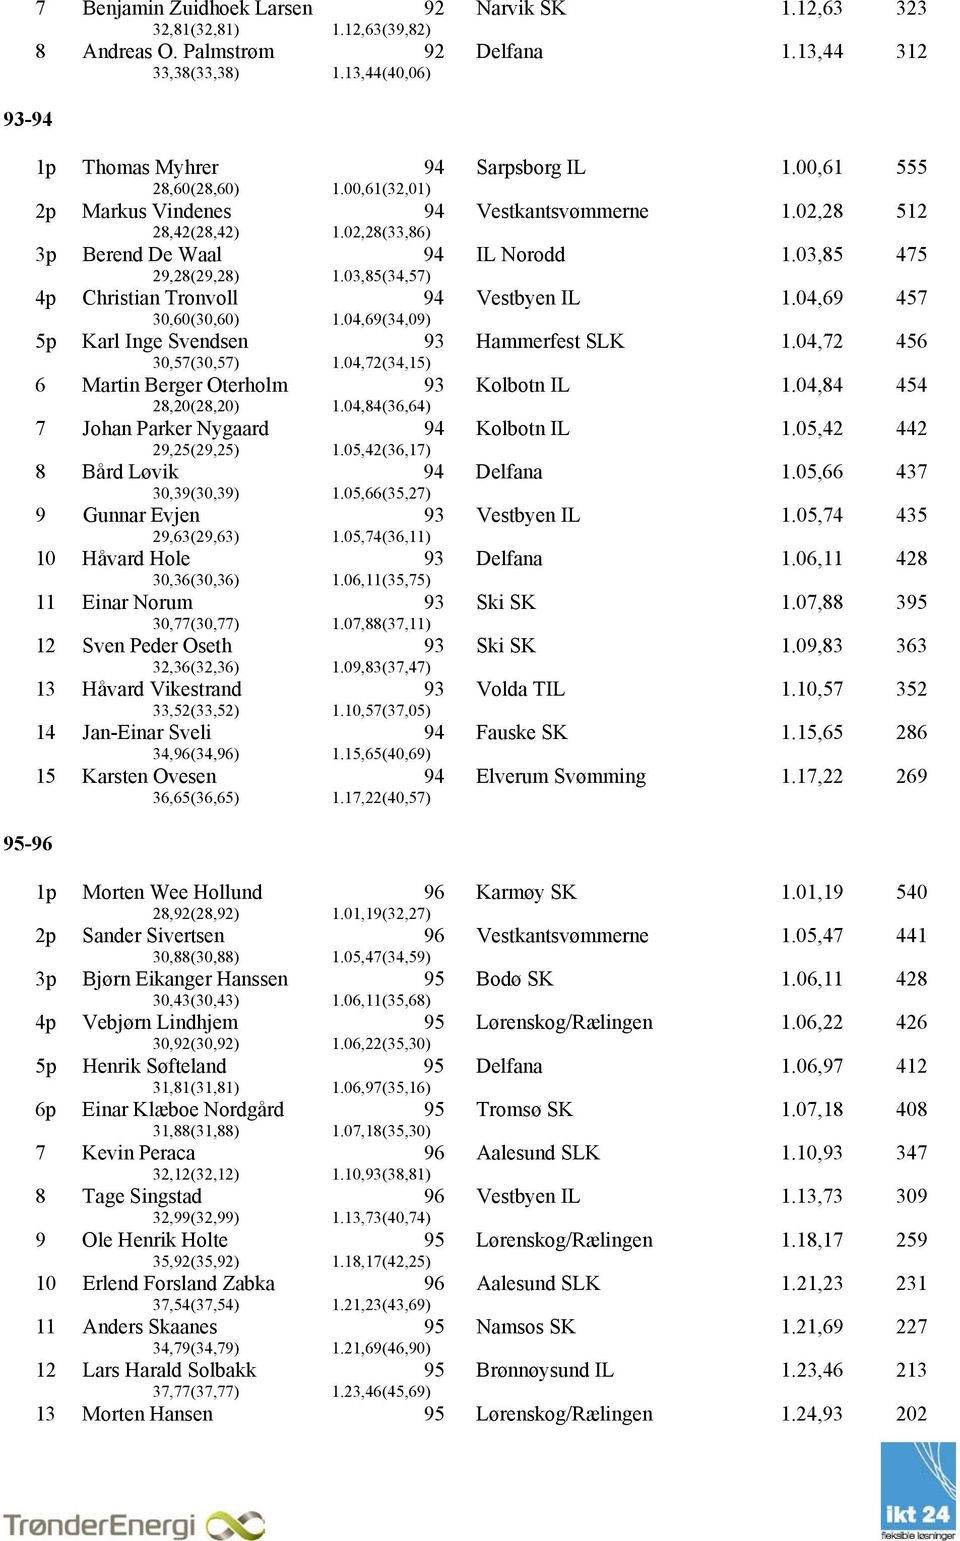 03,85 475 4p Christian Tronvoll 30,60(30,60) 1.04,69(34,09) Vestbyen IL 1.04,69 457 5p Karl Inge Svendsen 30,57(30,57) 1.04,72(34,15) Hammerfest SLK 1.